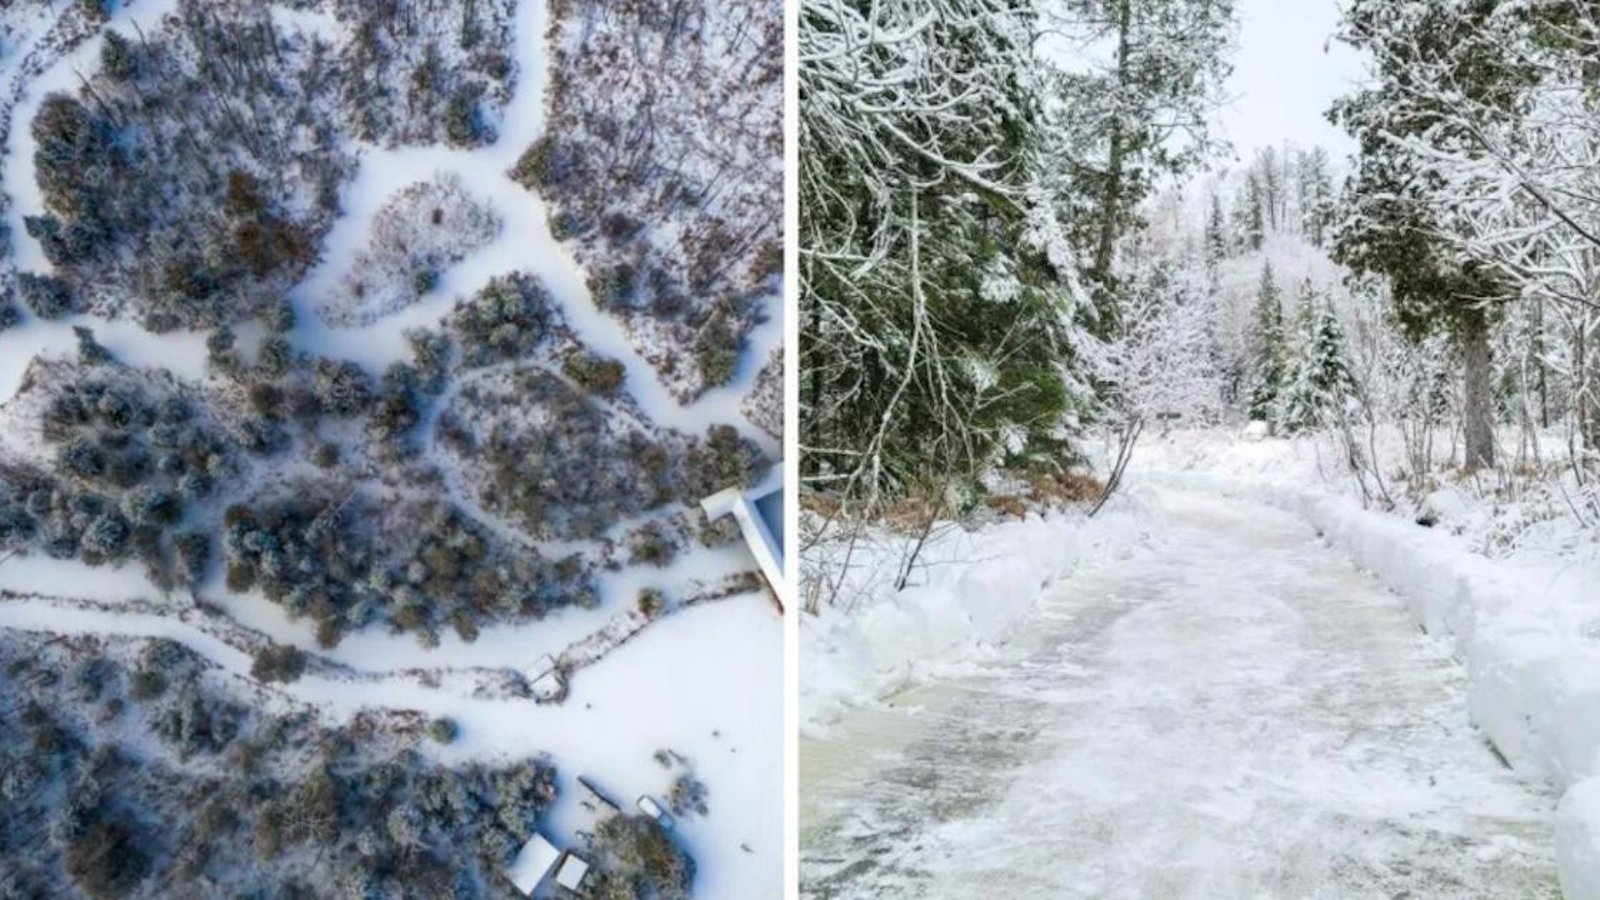 À mettre à l’agenda des activités hivernales: un labyrinthe de glace géant pour toute la famille